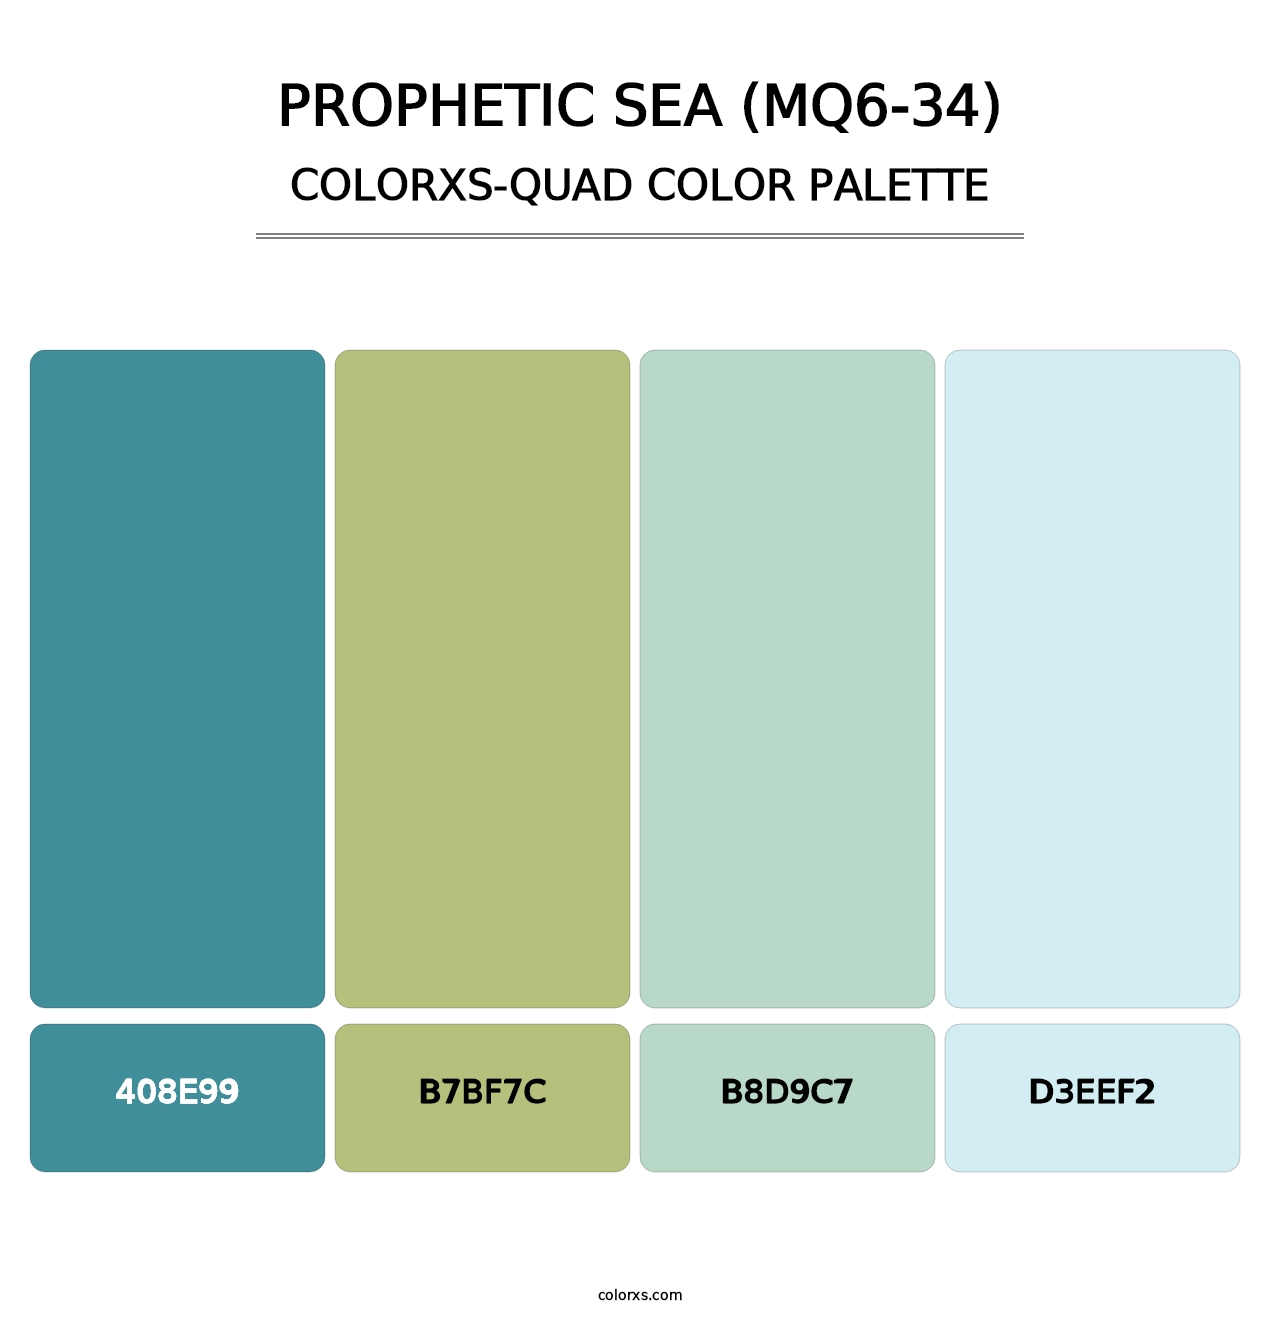 Prophetic Sea (MQ6-34) - Colorxs Quad Palette